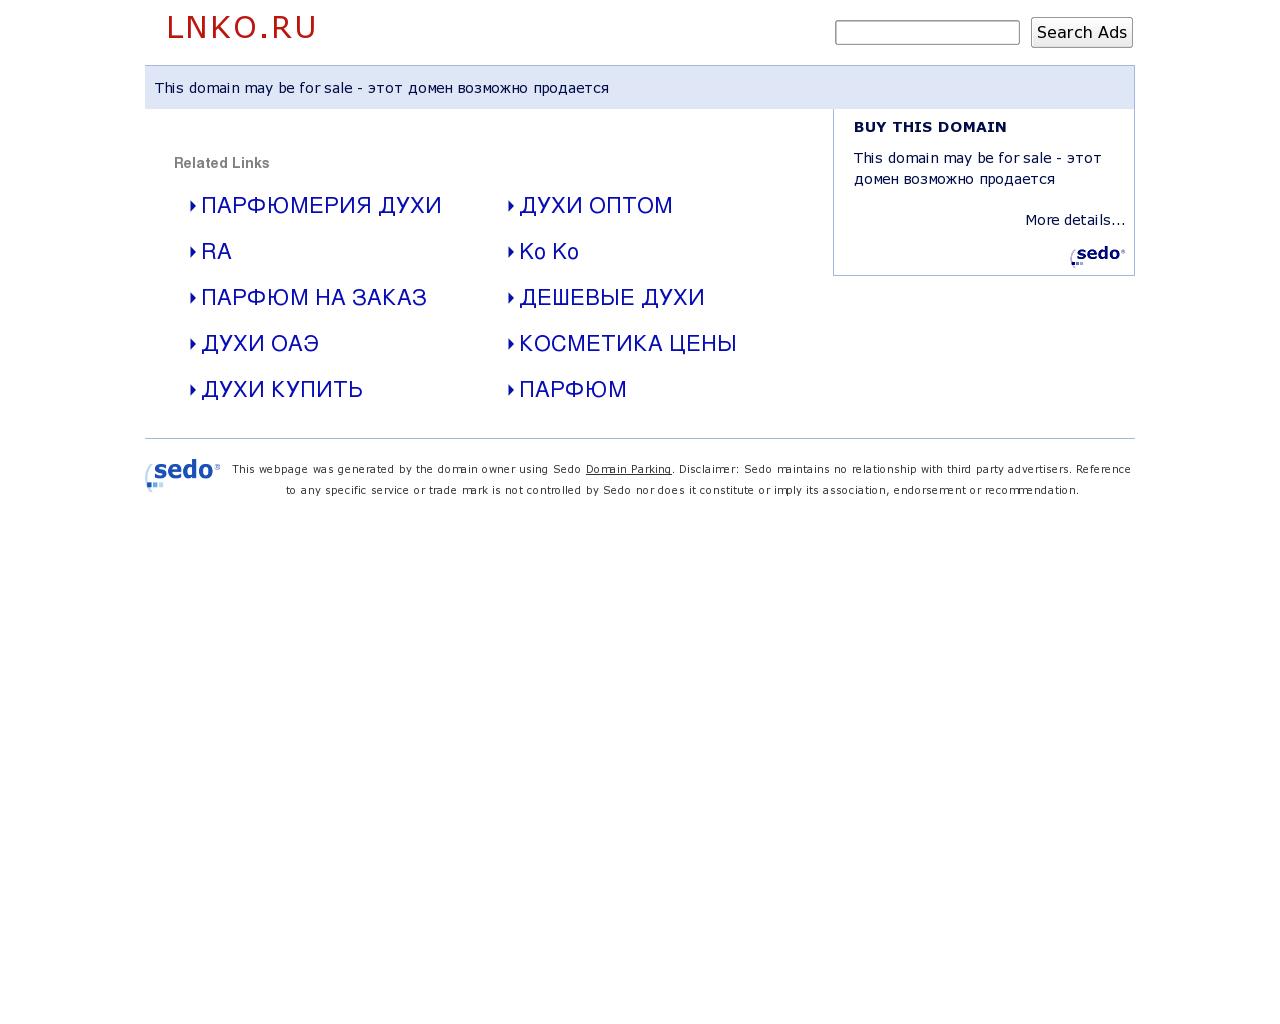 Изображение сайта lnko.ru в разрешении 1280x1024